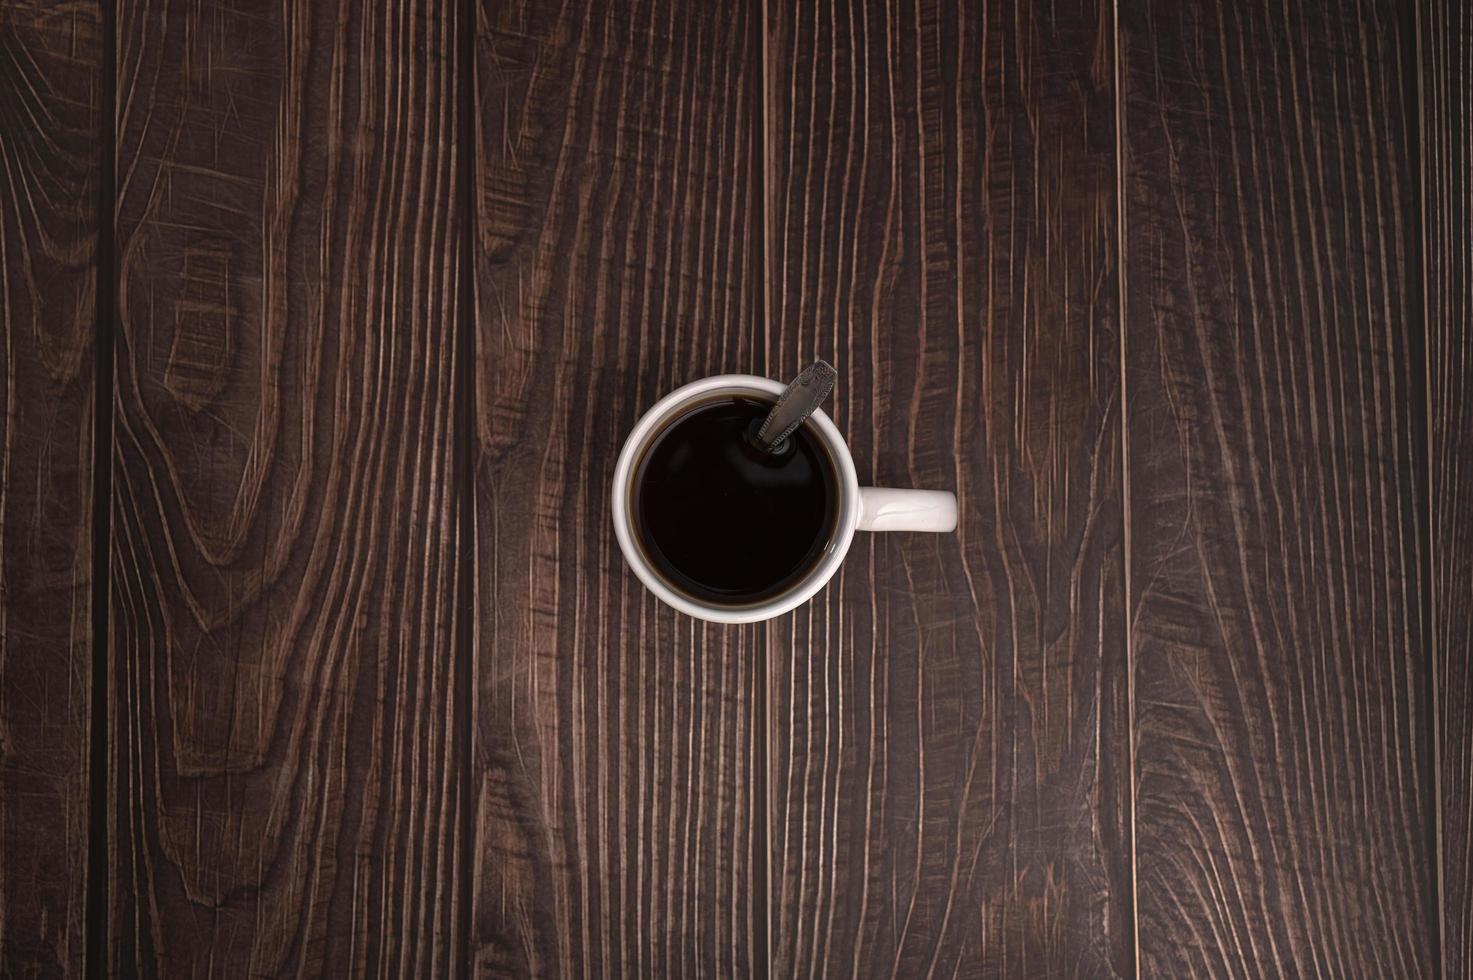 amo beber café, as xícaras de café estão na mesa foto